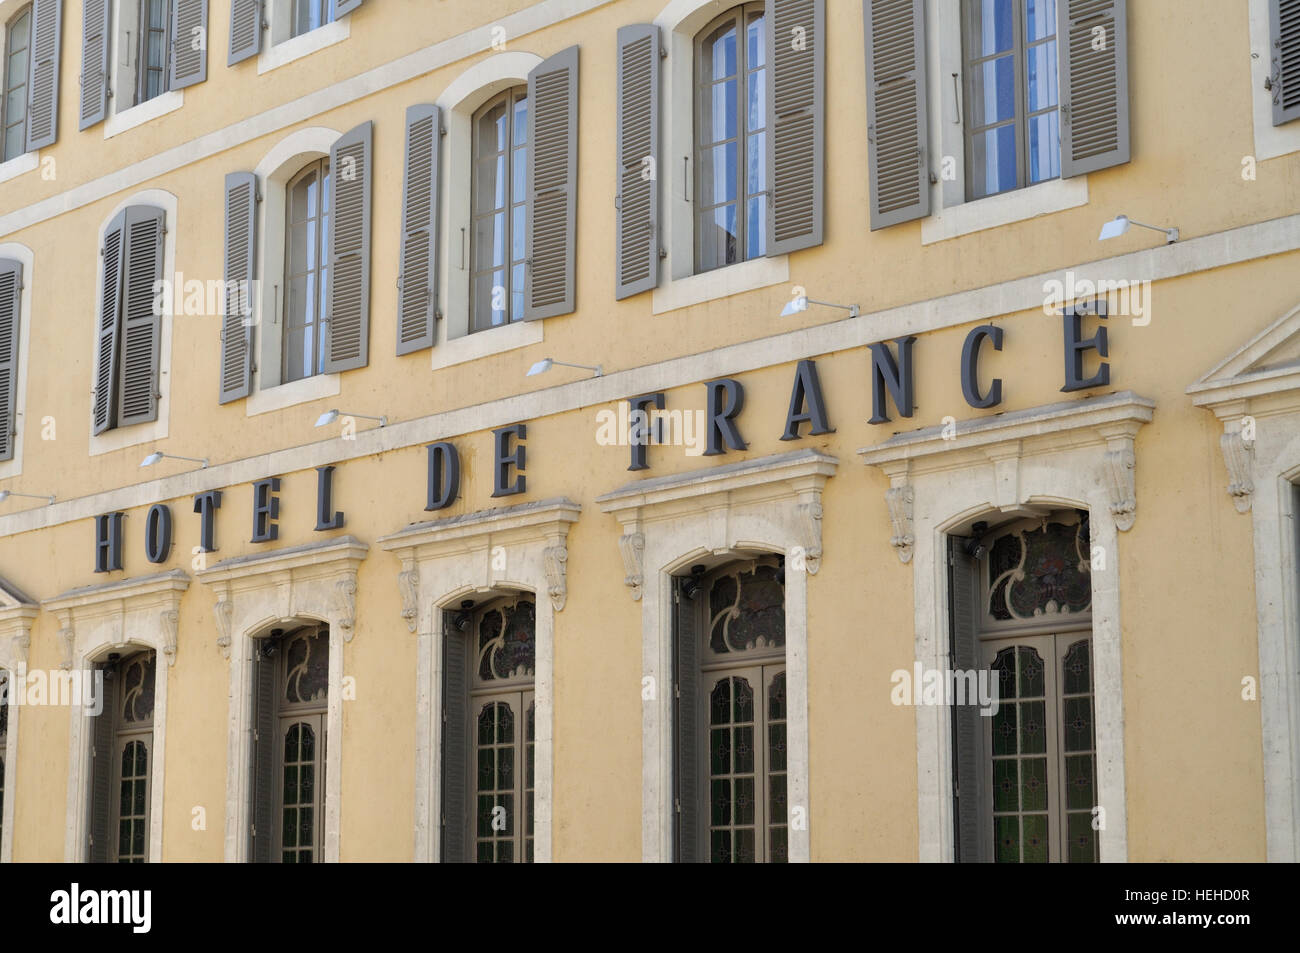 Façade de l'Hôtel de France à la place de la libération, Auch, France. Banque D'Images